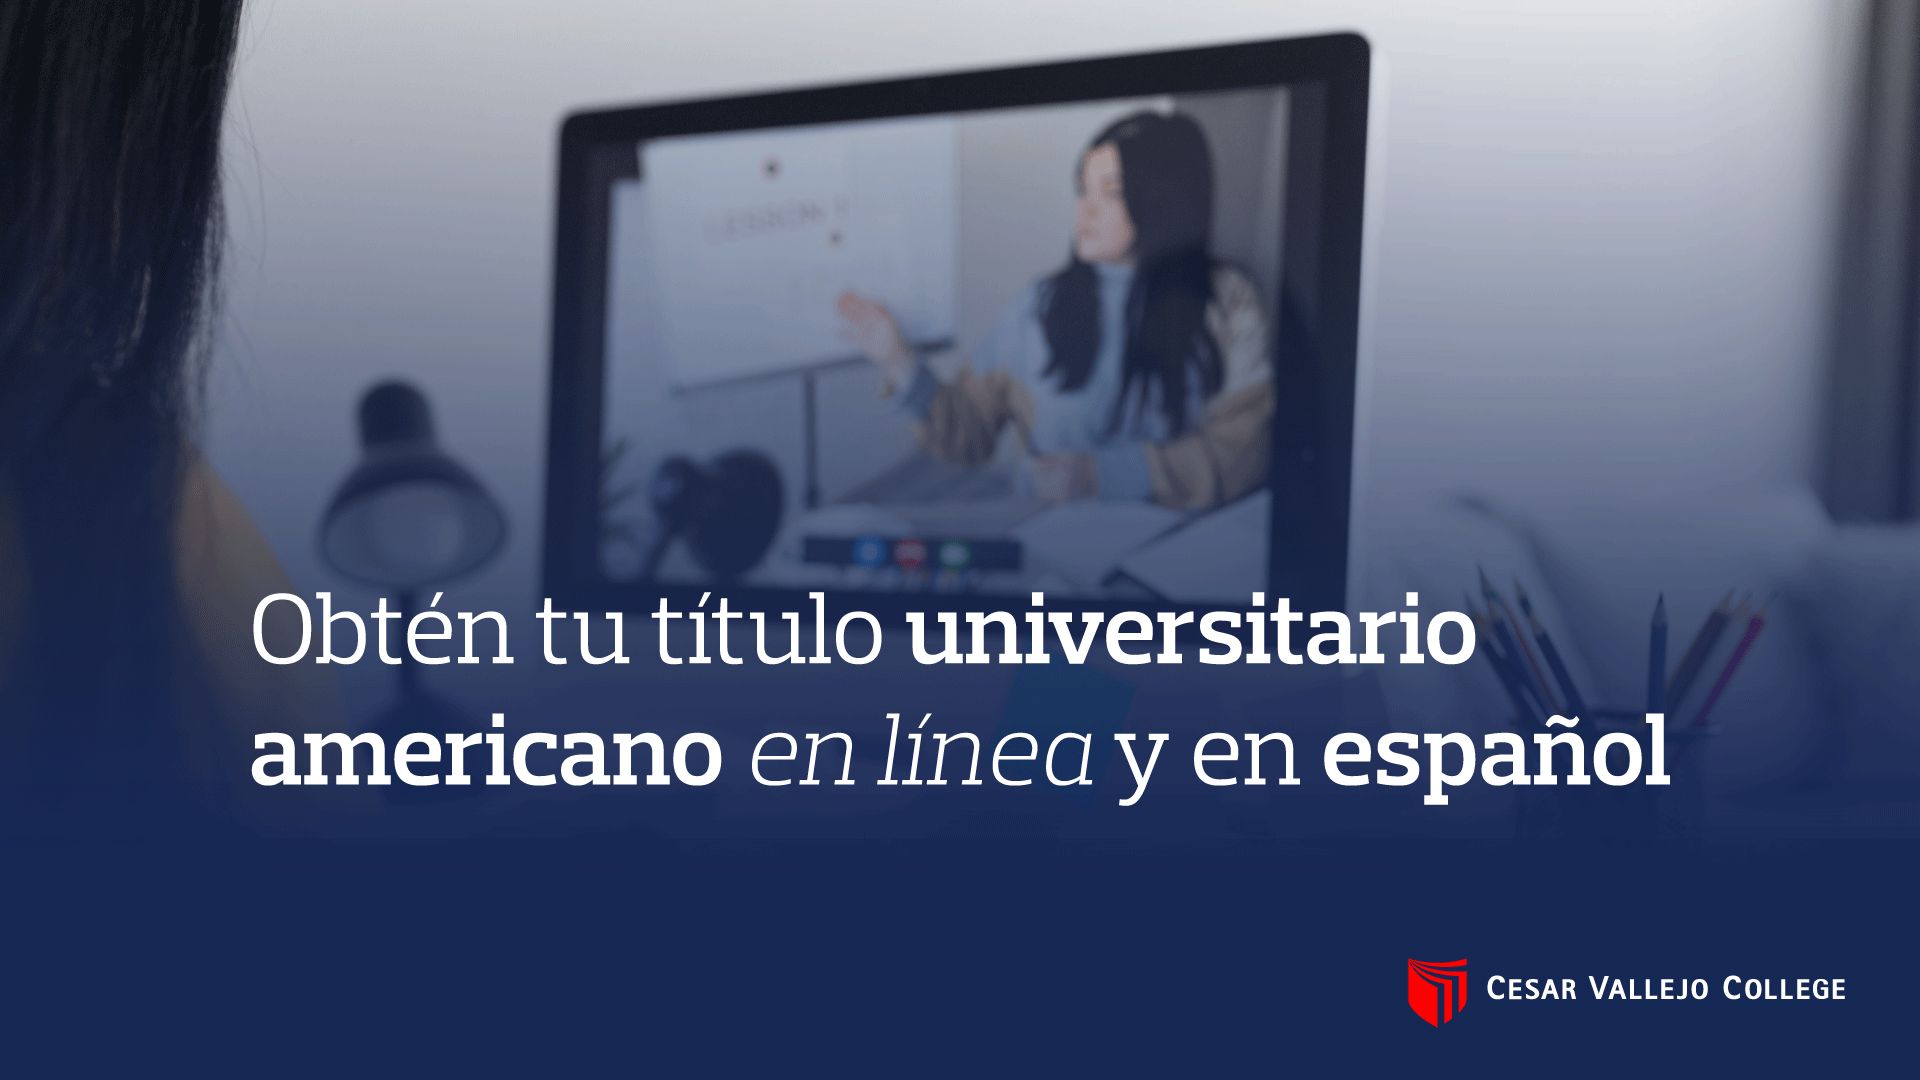 Obtén tu título universitario americano en línea y en español